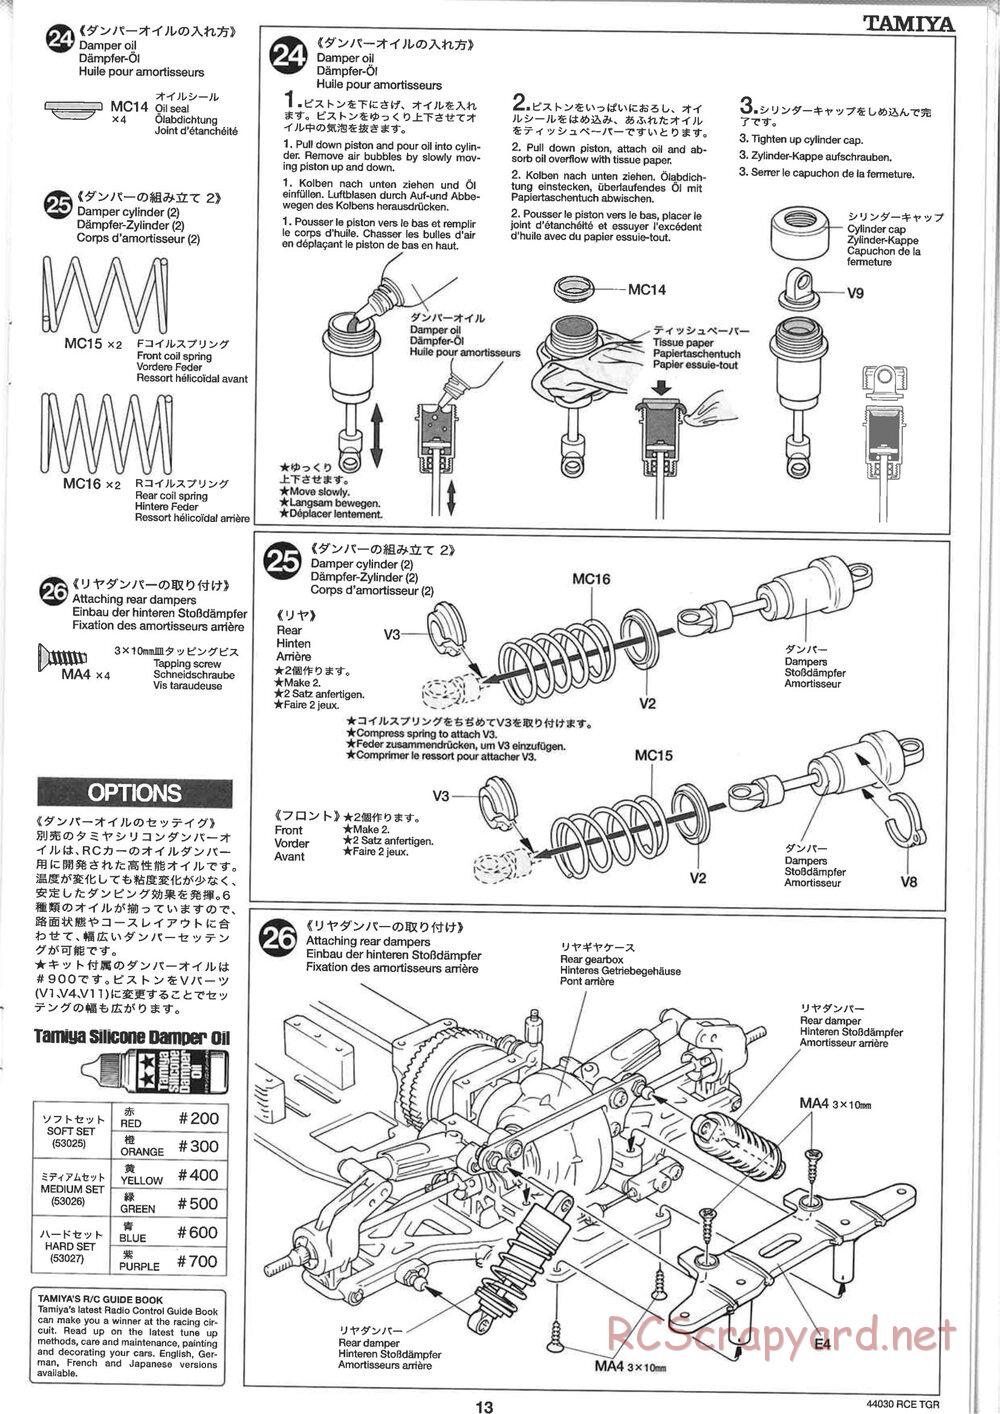 Tamiya - TGR Chassis - Manual - Page 13